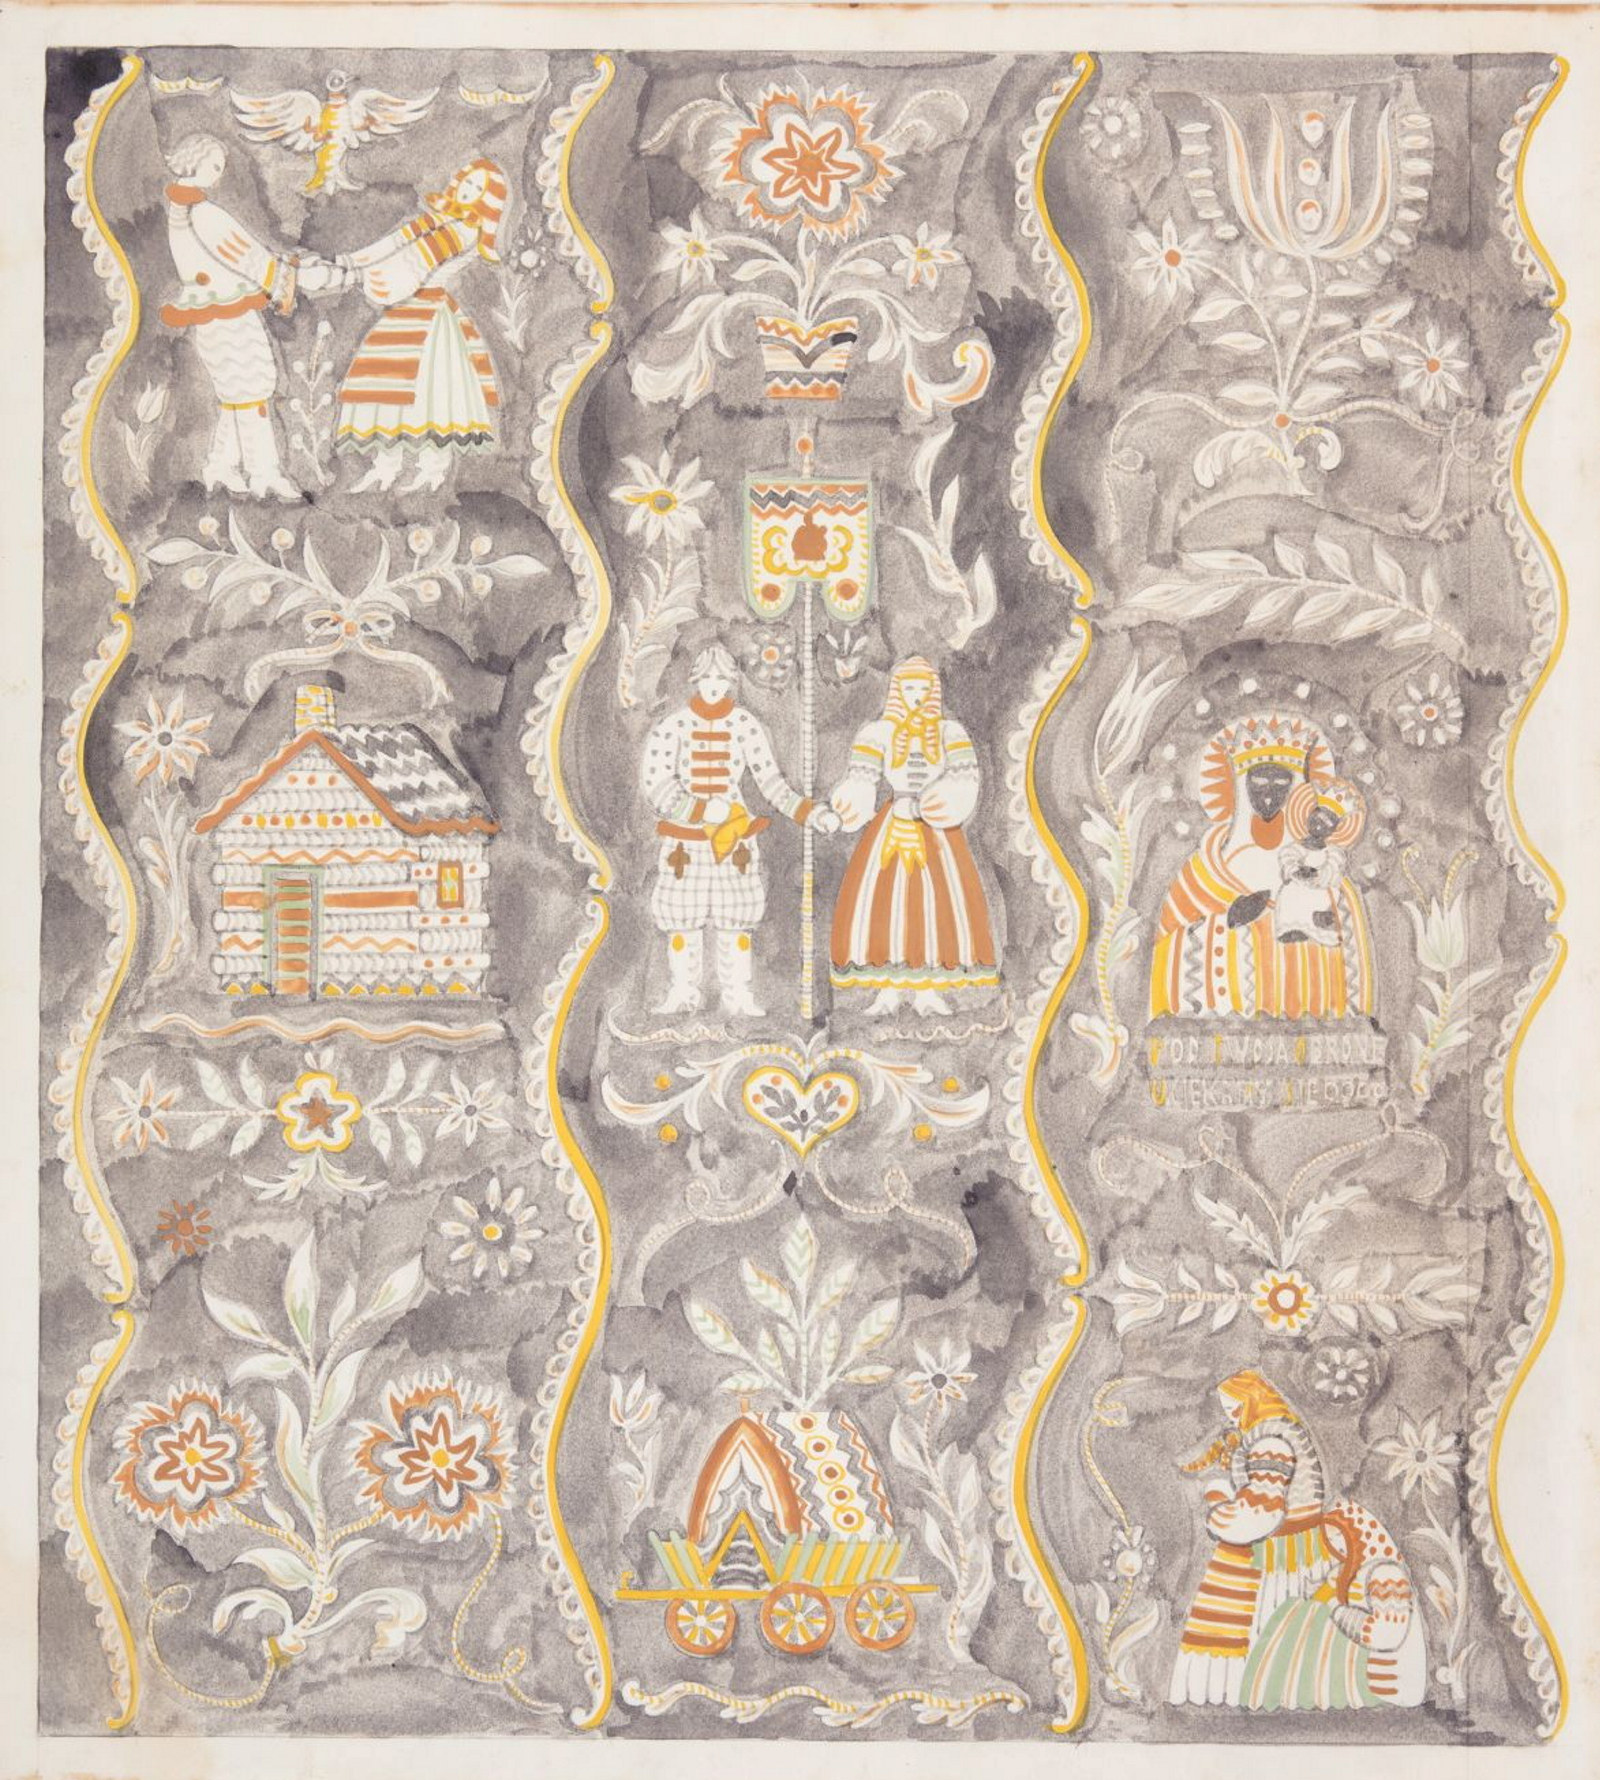 Original watercolour and pencil design for a textile, 'Poland'